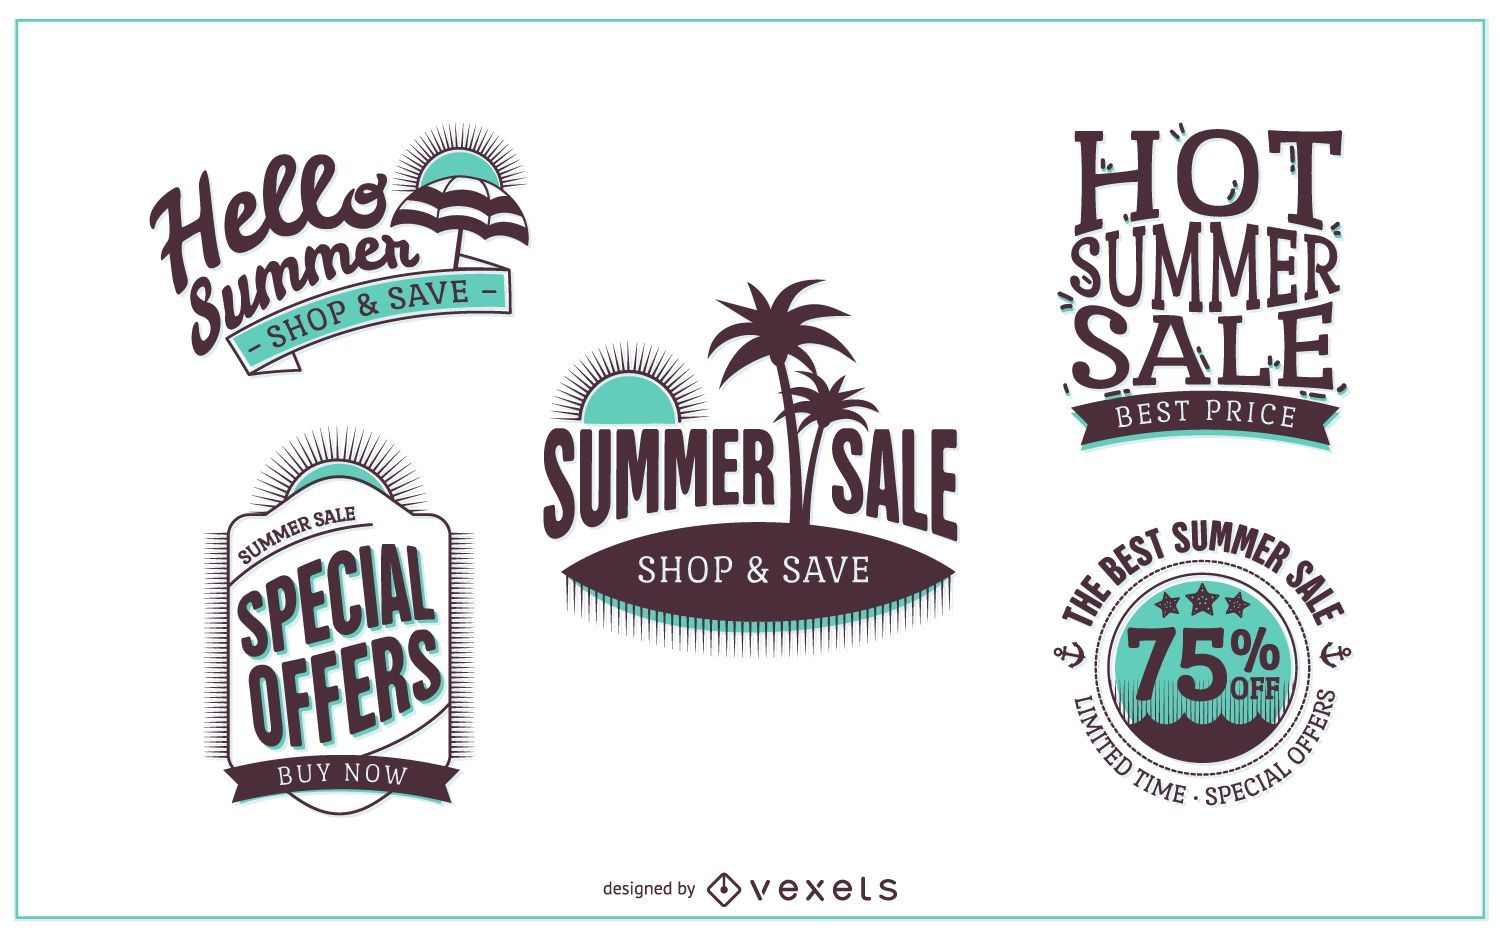 30 Hot deals logo Vector Images | Depositphotos